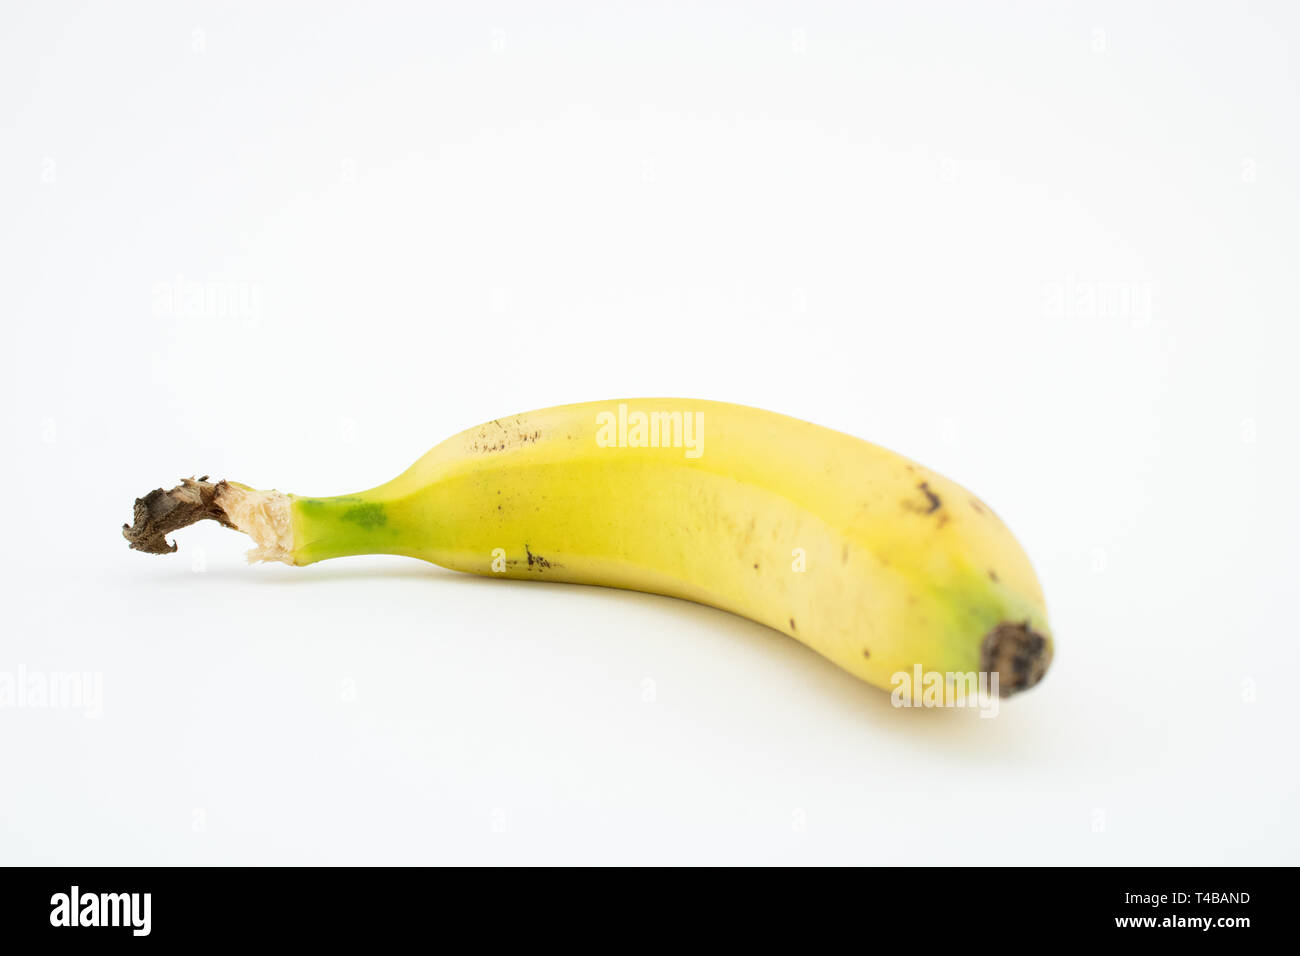 Banane oder wegerich auf weißem Hintergrund. Dieses tropische Frucht hat Nährstoffe wie Kalium und Magnesium. Stockfoto